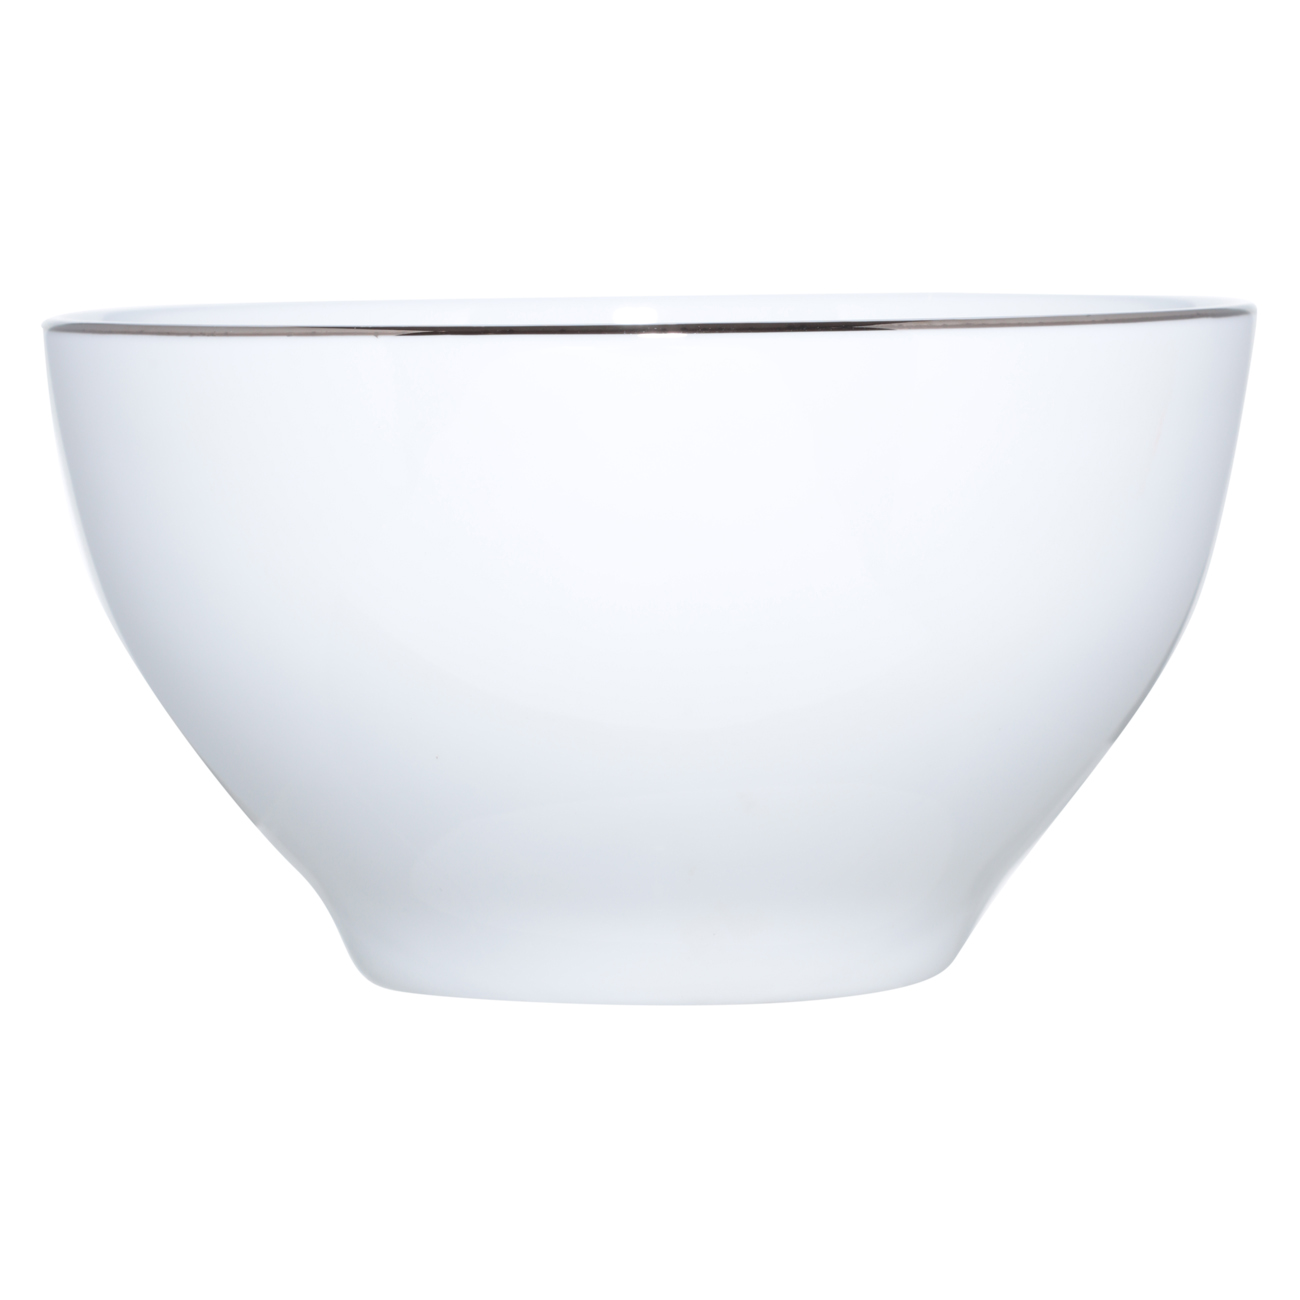 Bowl, 12x6 cm, 2 pieces, porcelain F, white, Ideal silver изображение № 2